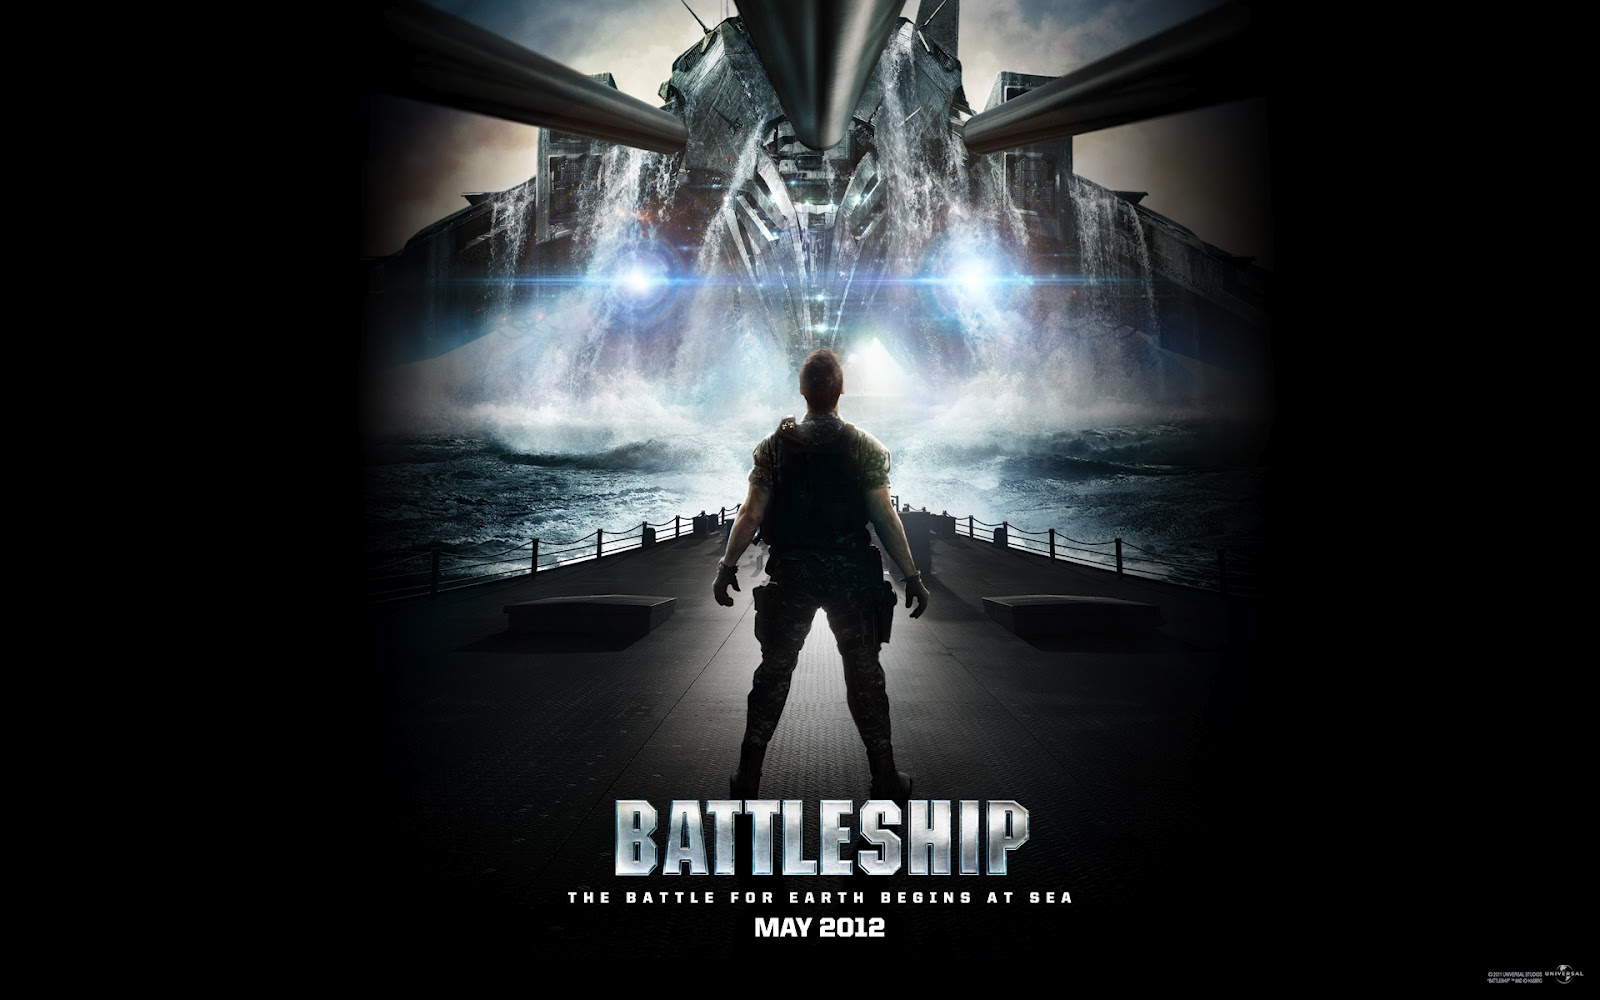 http://1.bp.blogspot.com/-5i4sQpADluw/T5wrhe3FVsI/AAAAAAAAACk/gZDwUpuff-E/s1600/battleship+2012.jpg